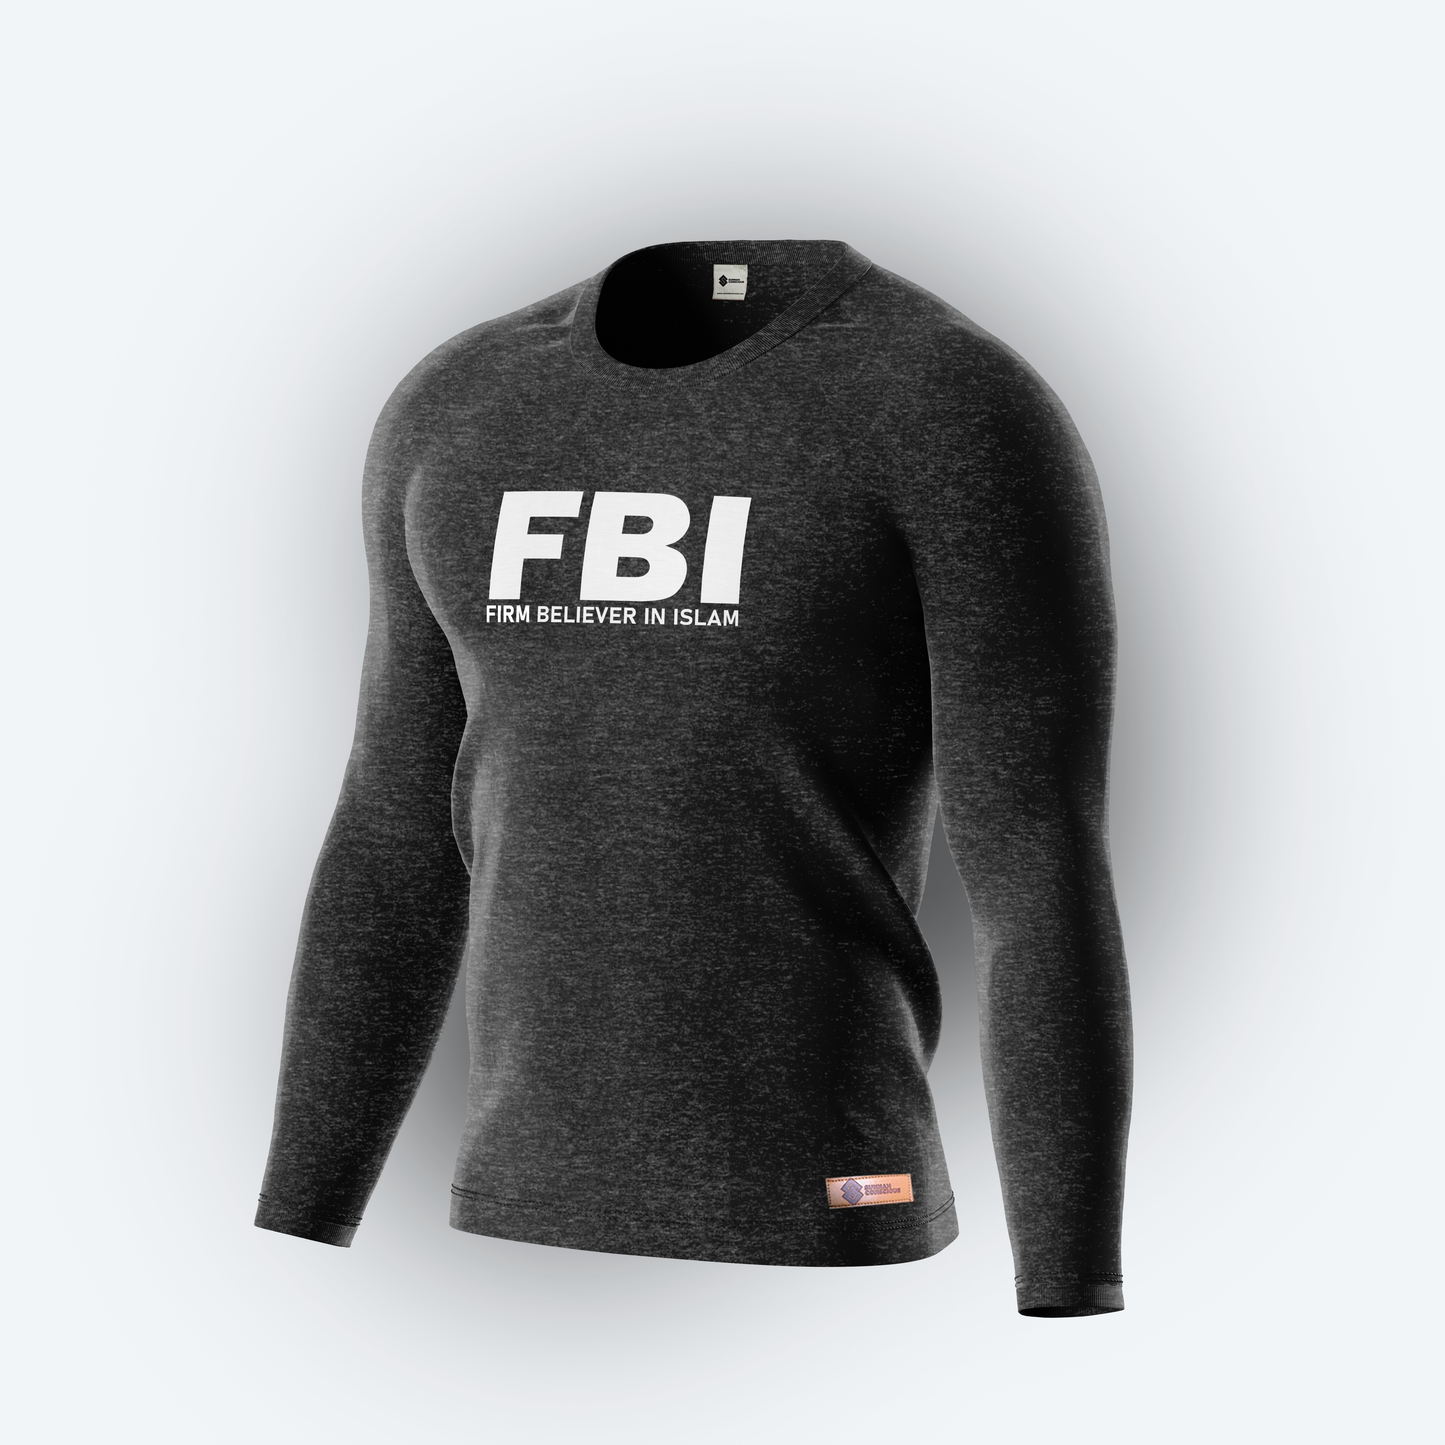 FBI Full Sleeves Shirt